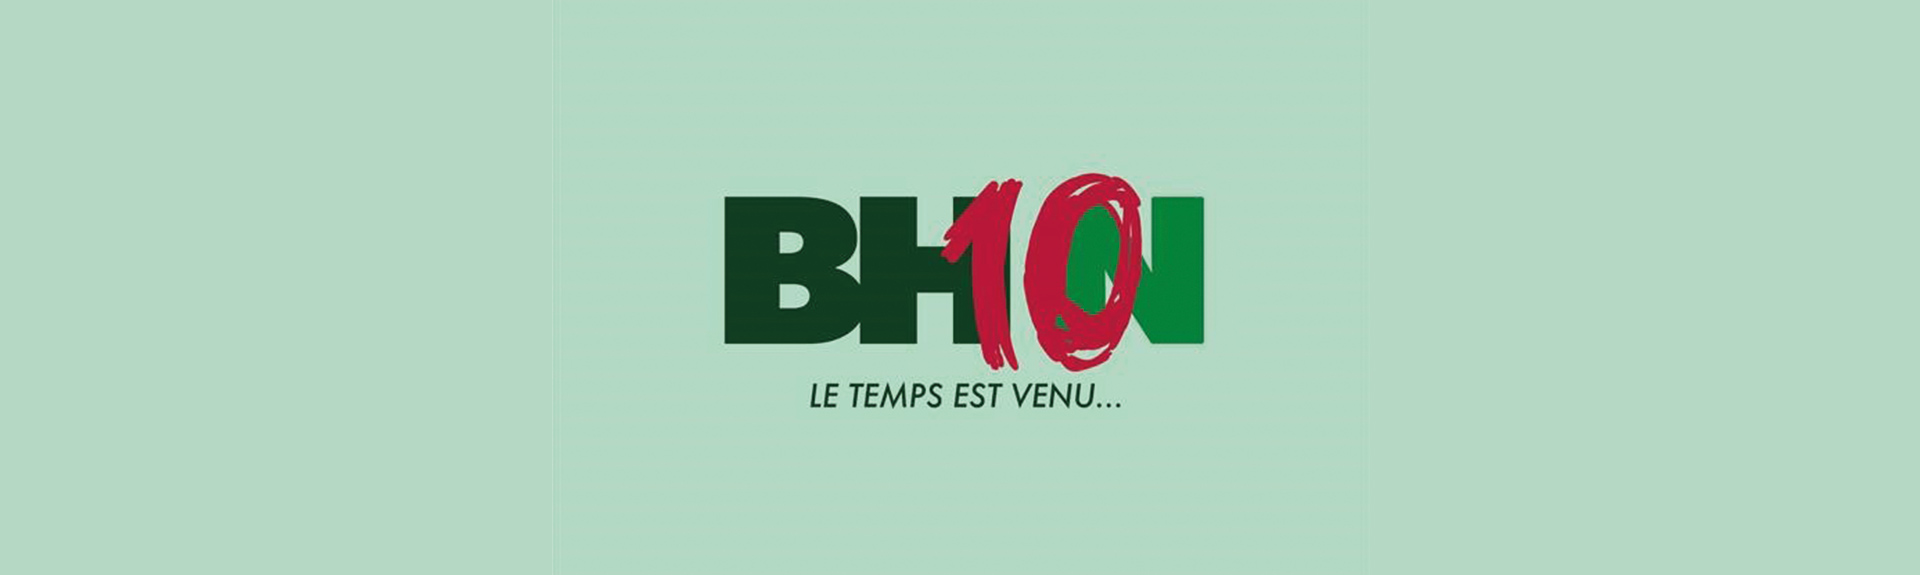 header BHN10